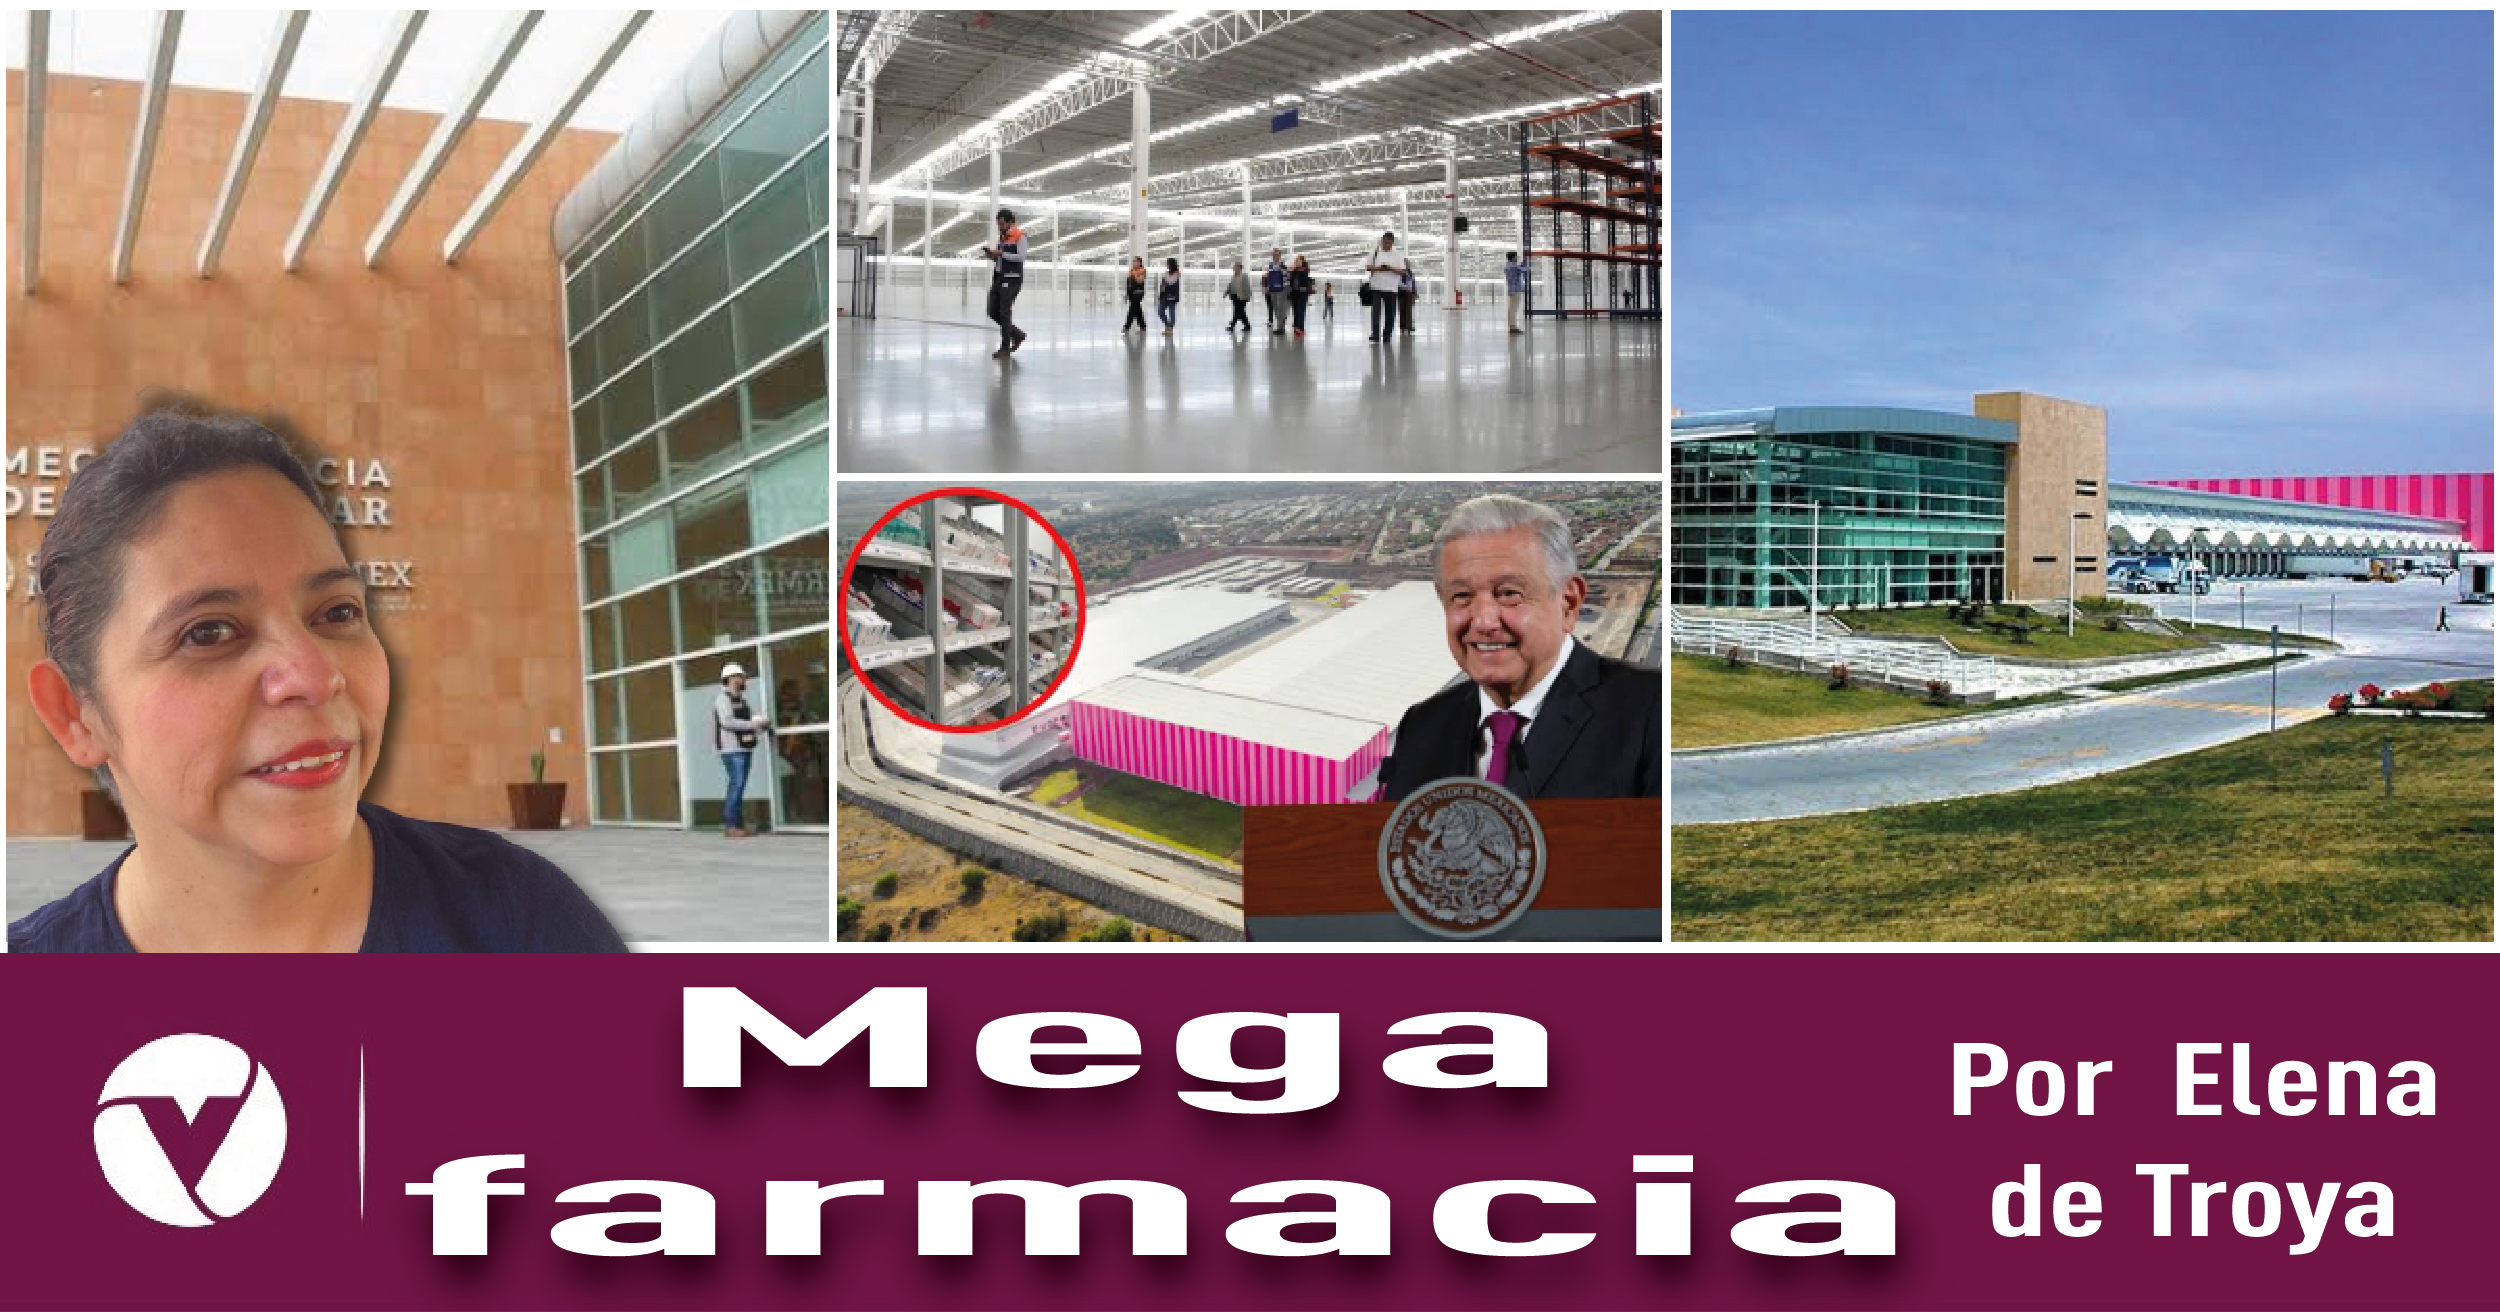 Mega farmacia| Por Elena de Troya